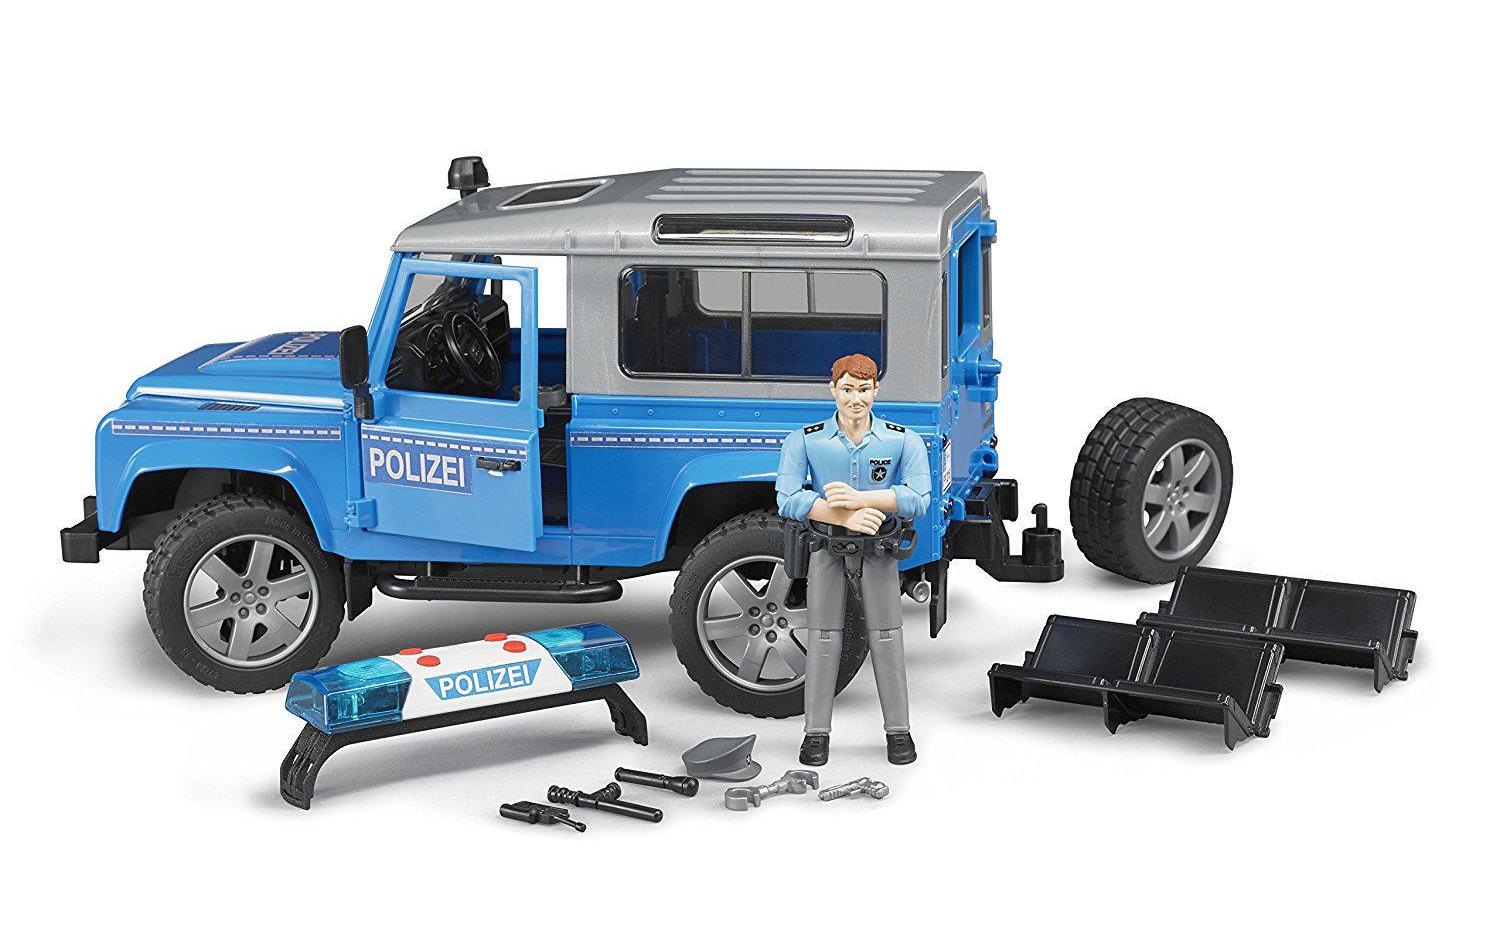 Bruder® Spielzeug-Polizei »Land Rover Polizei«